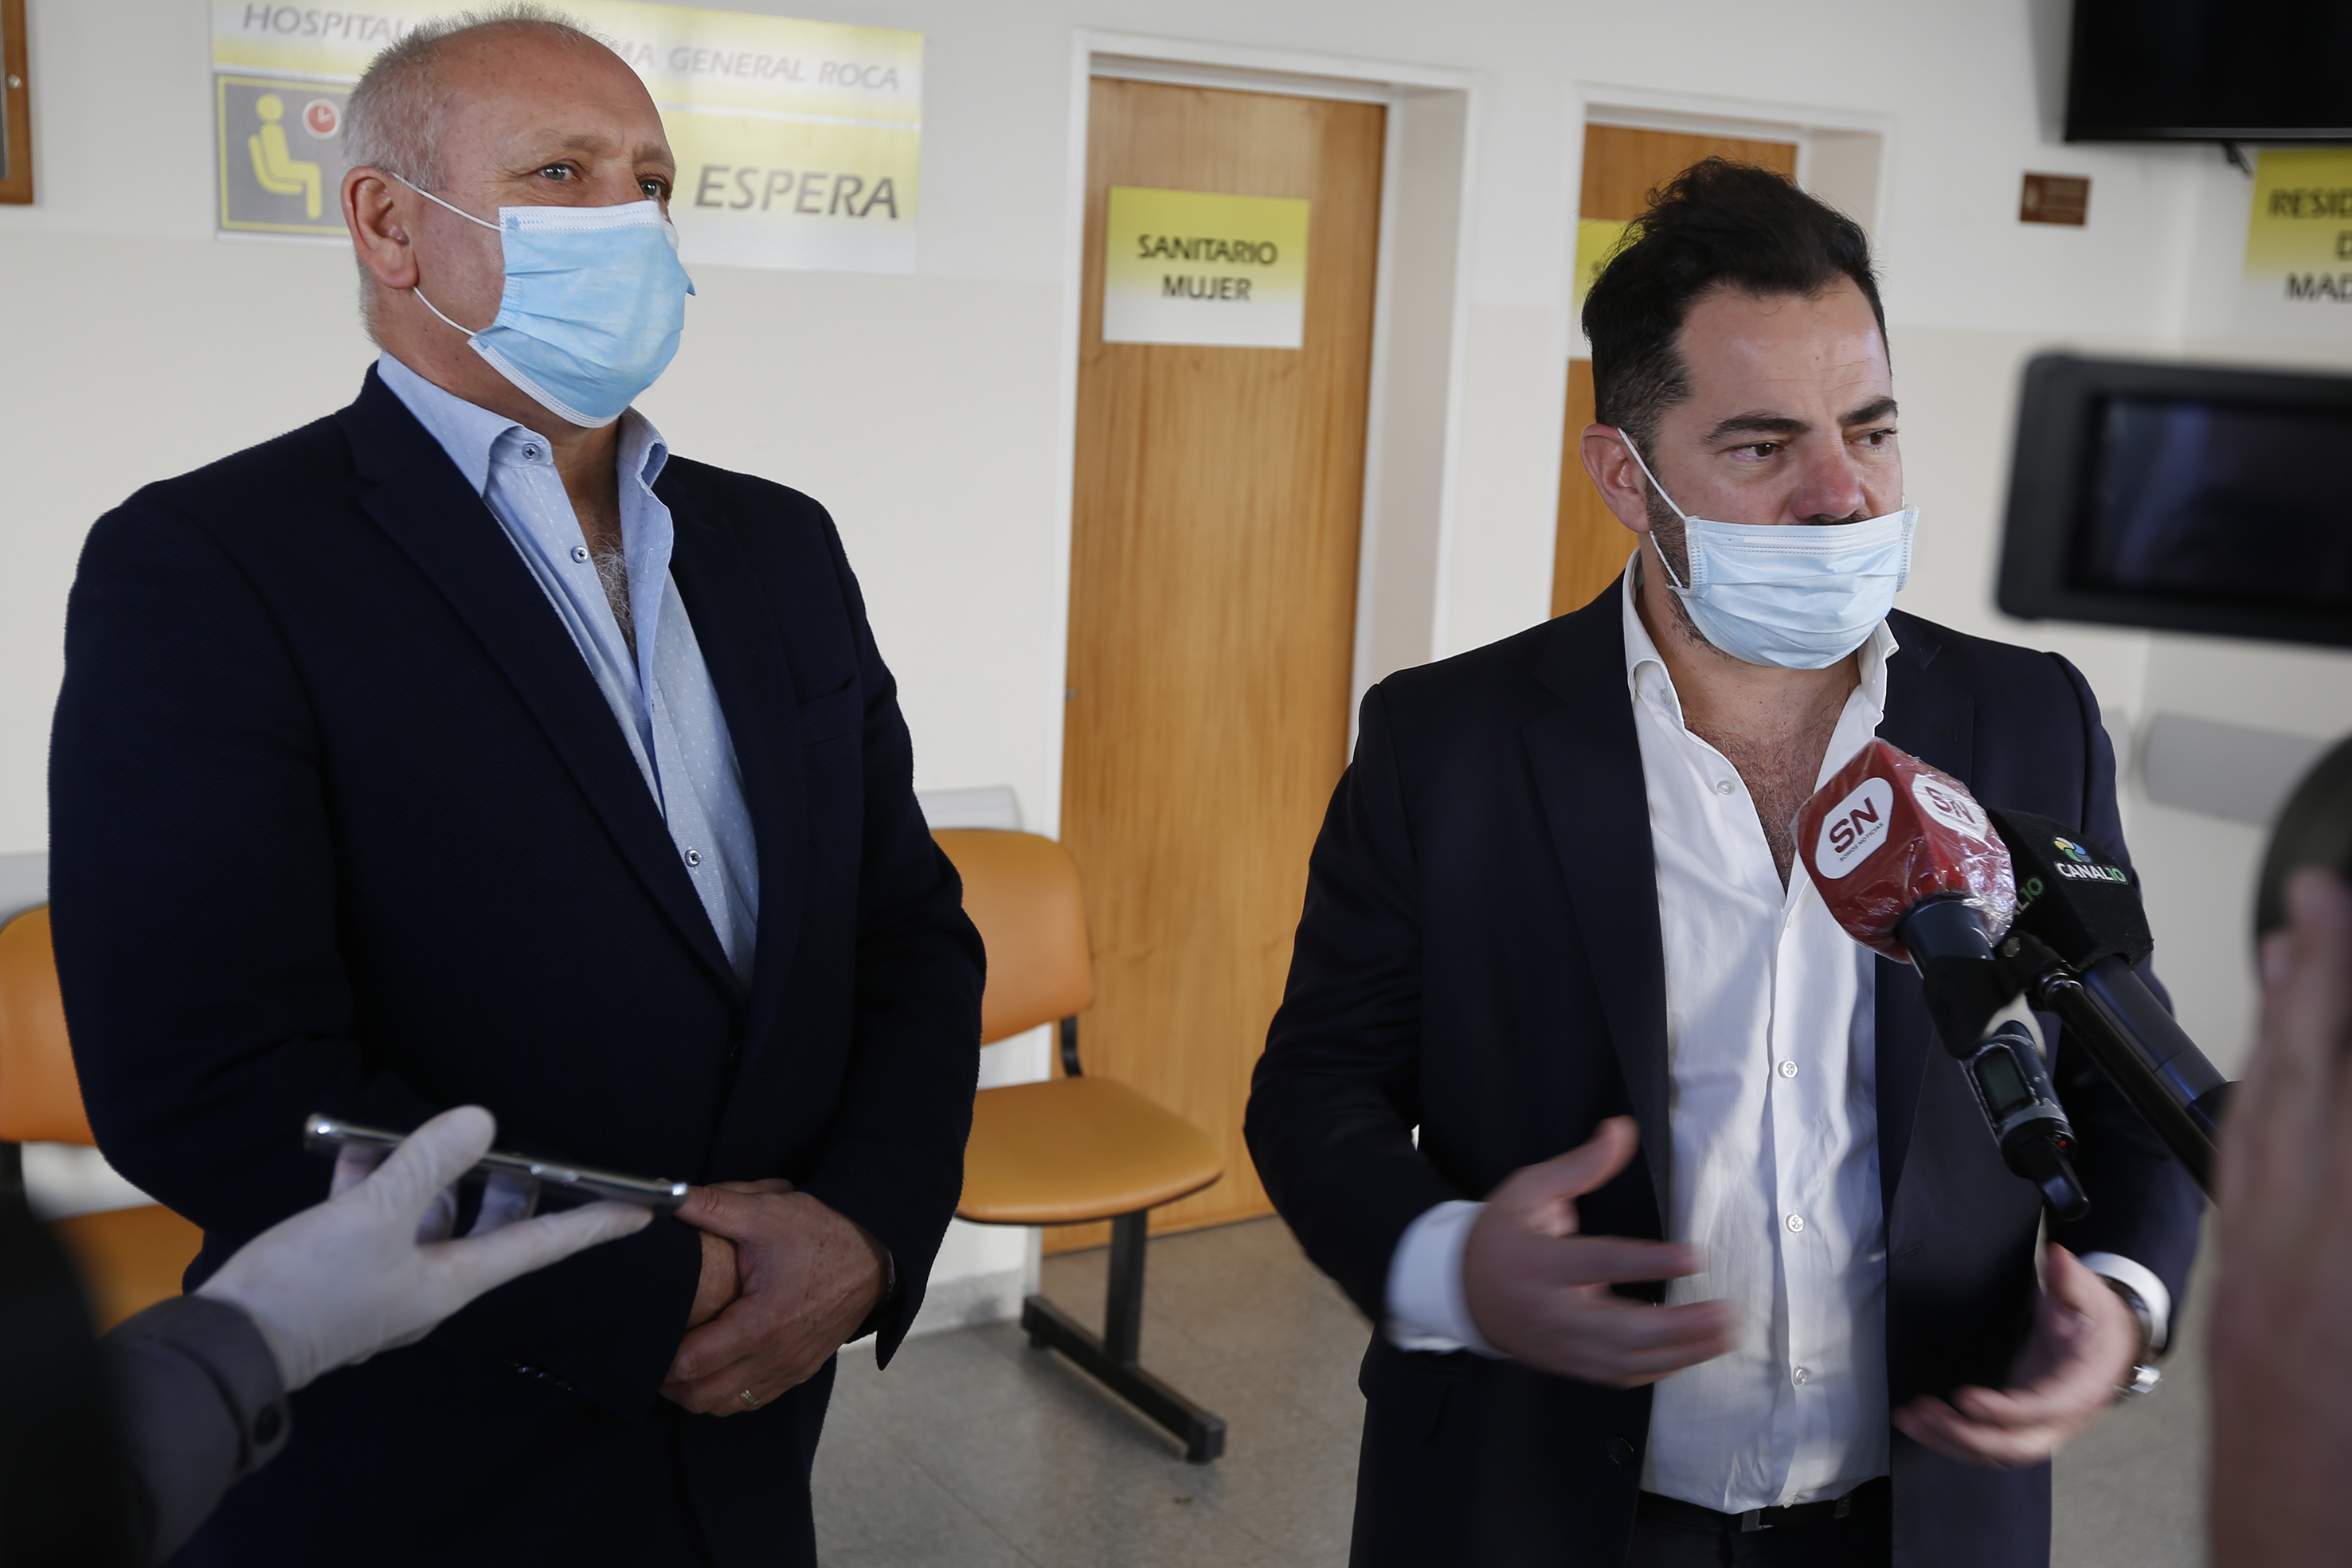 Bonelli junto al ministro Zgaib, el 12 de junio pasado, cuando una comitiva del Ministerio de Salud de la Nación estuvo en Roca.